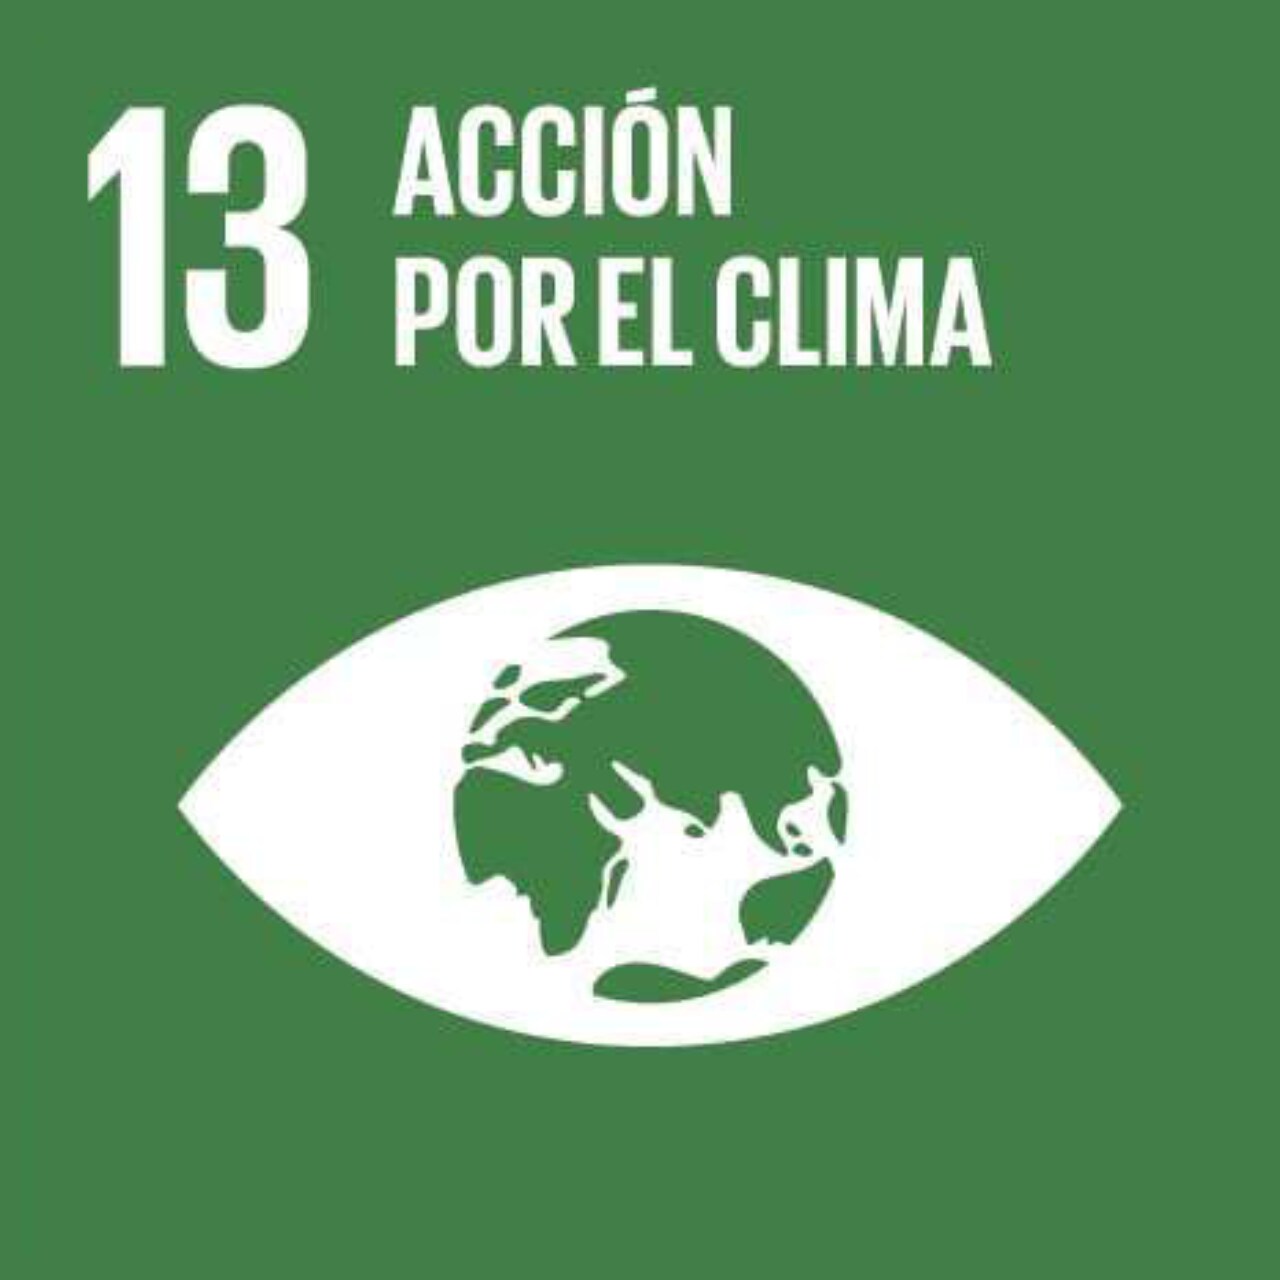 Imagen que representa el ODS número Trece - Acción contra el cambio climático global, con un fondo verde y el icono de un ojo con el globo terráqueo en el centro.